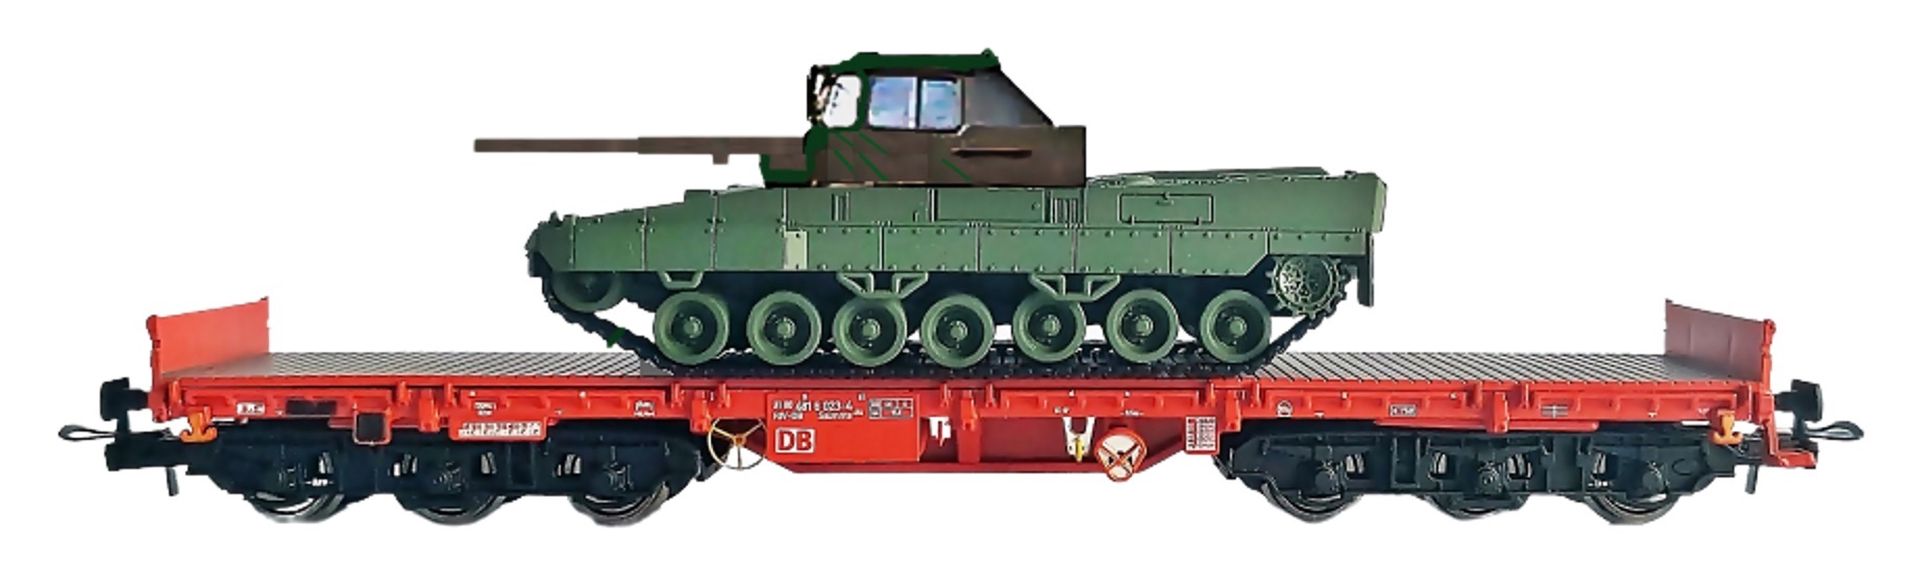 NPE-Modellbau NW22163 - Schwerlastwagen Salmms 454 mit Fahrschul-Panzer, DB-Cargo, Ep.V